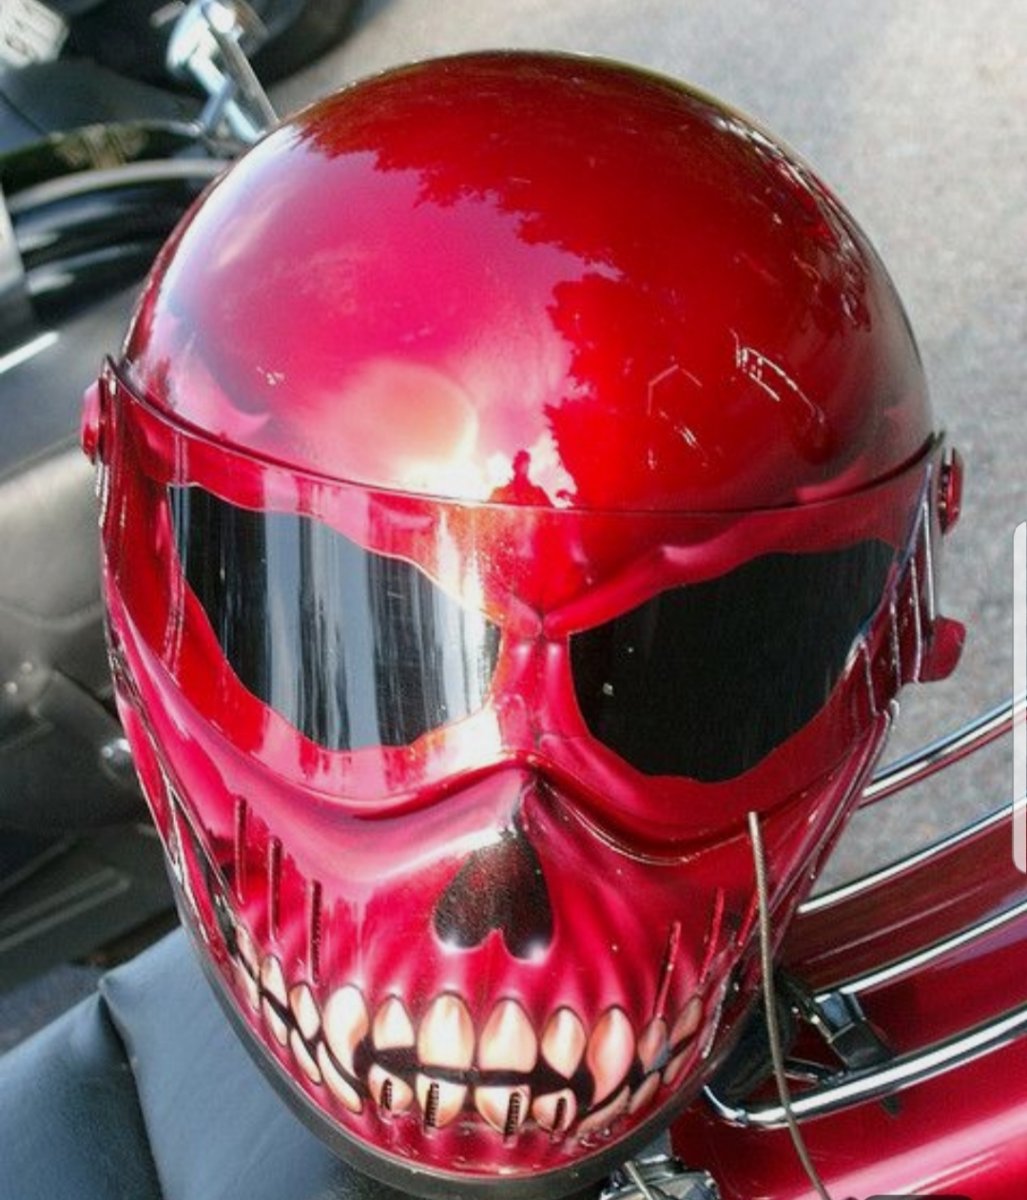 Смешной шлем для мотоцикла